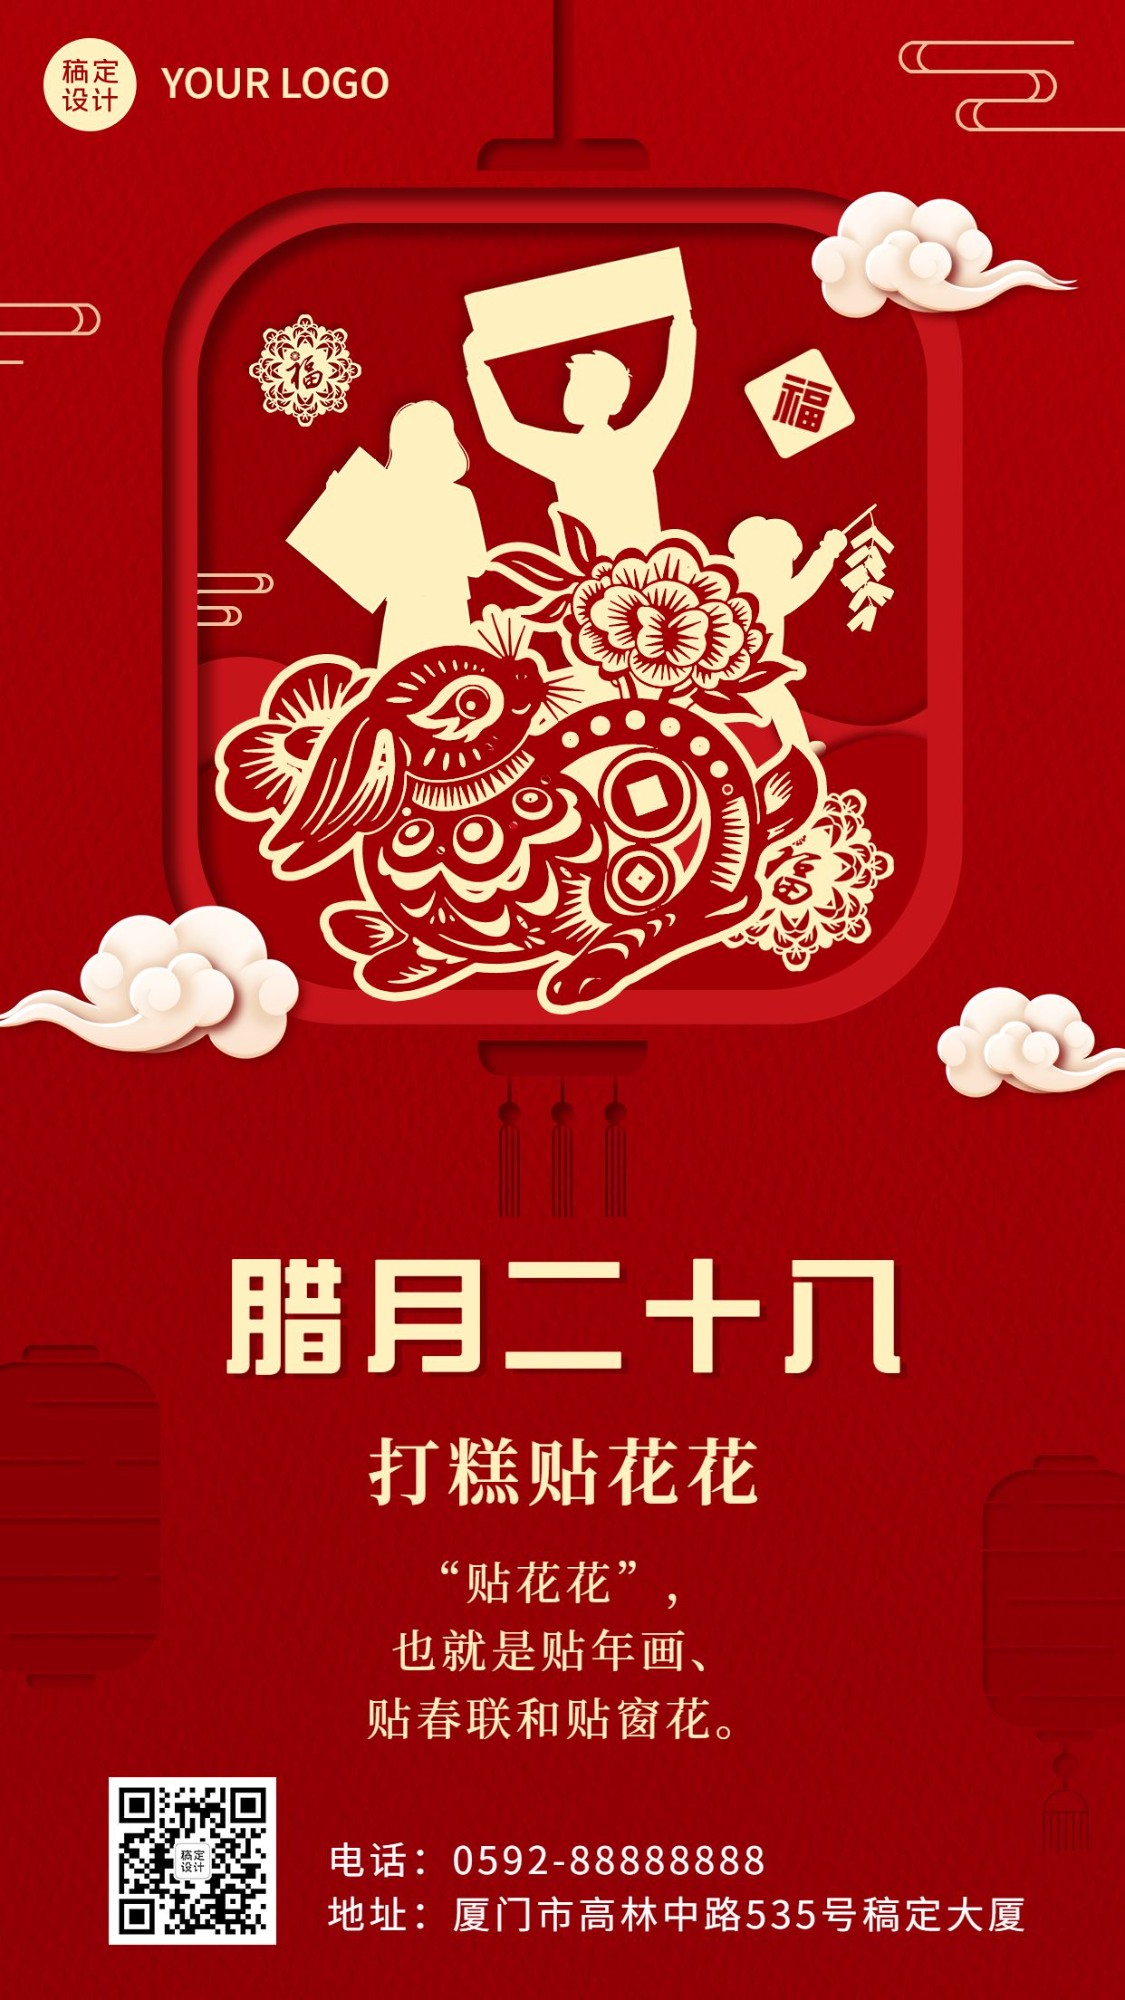 春节年前腊月二十八祝福系列手机海报预览效果